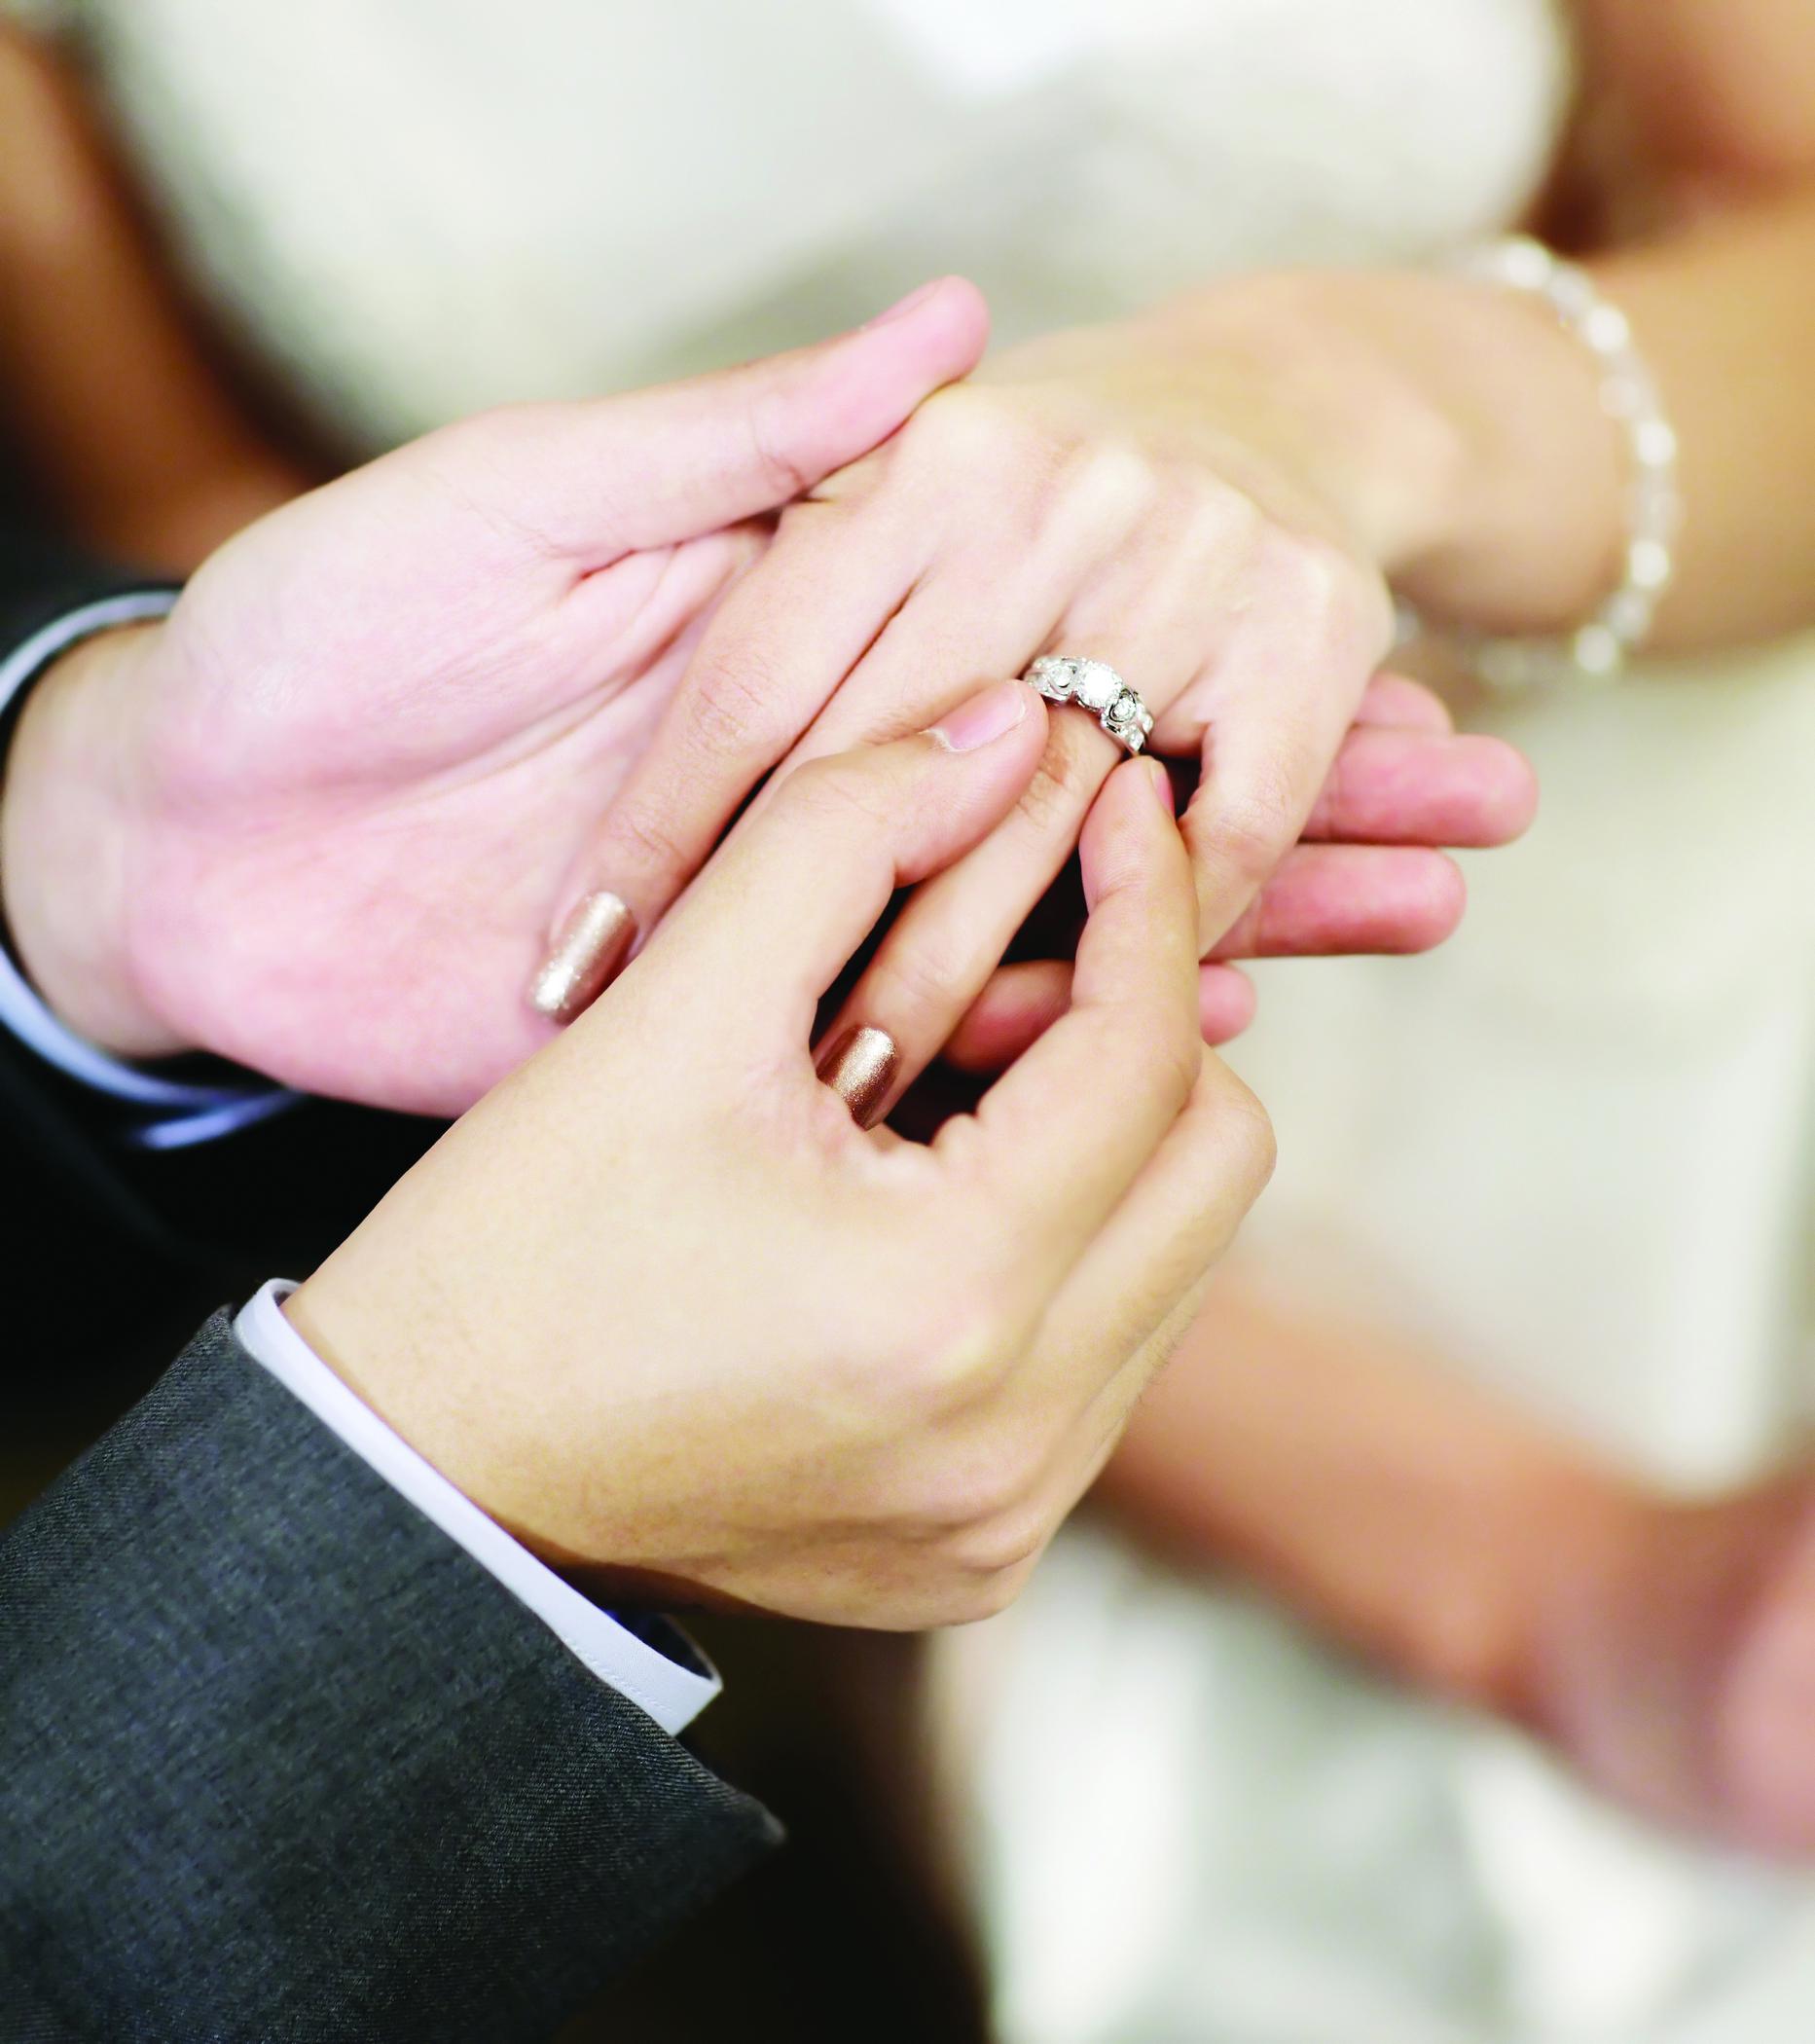 Кольцо когда замужем. Обручальные кольца на руках. Обручальное кольцо на пальце. Красивые обручальные кольца на руках. Свадебные кольца на пальцах.